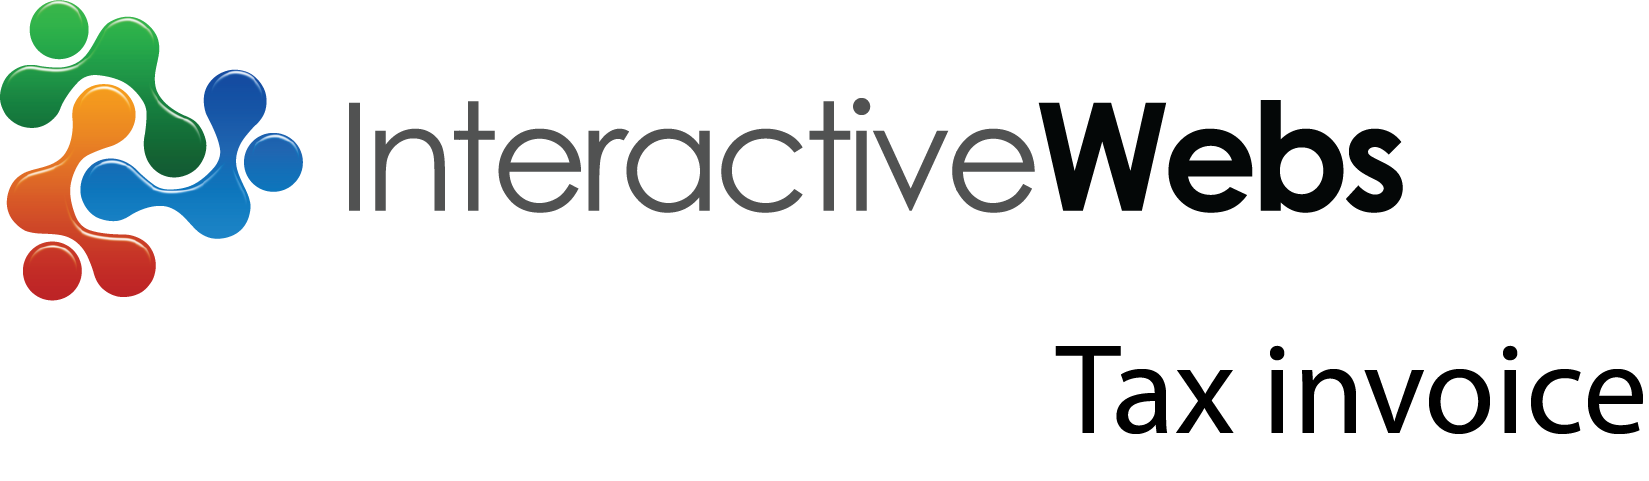 InteractiveWebs